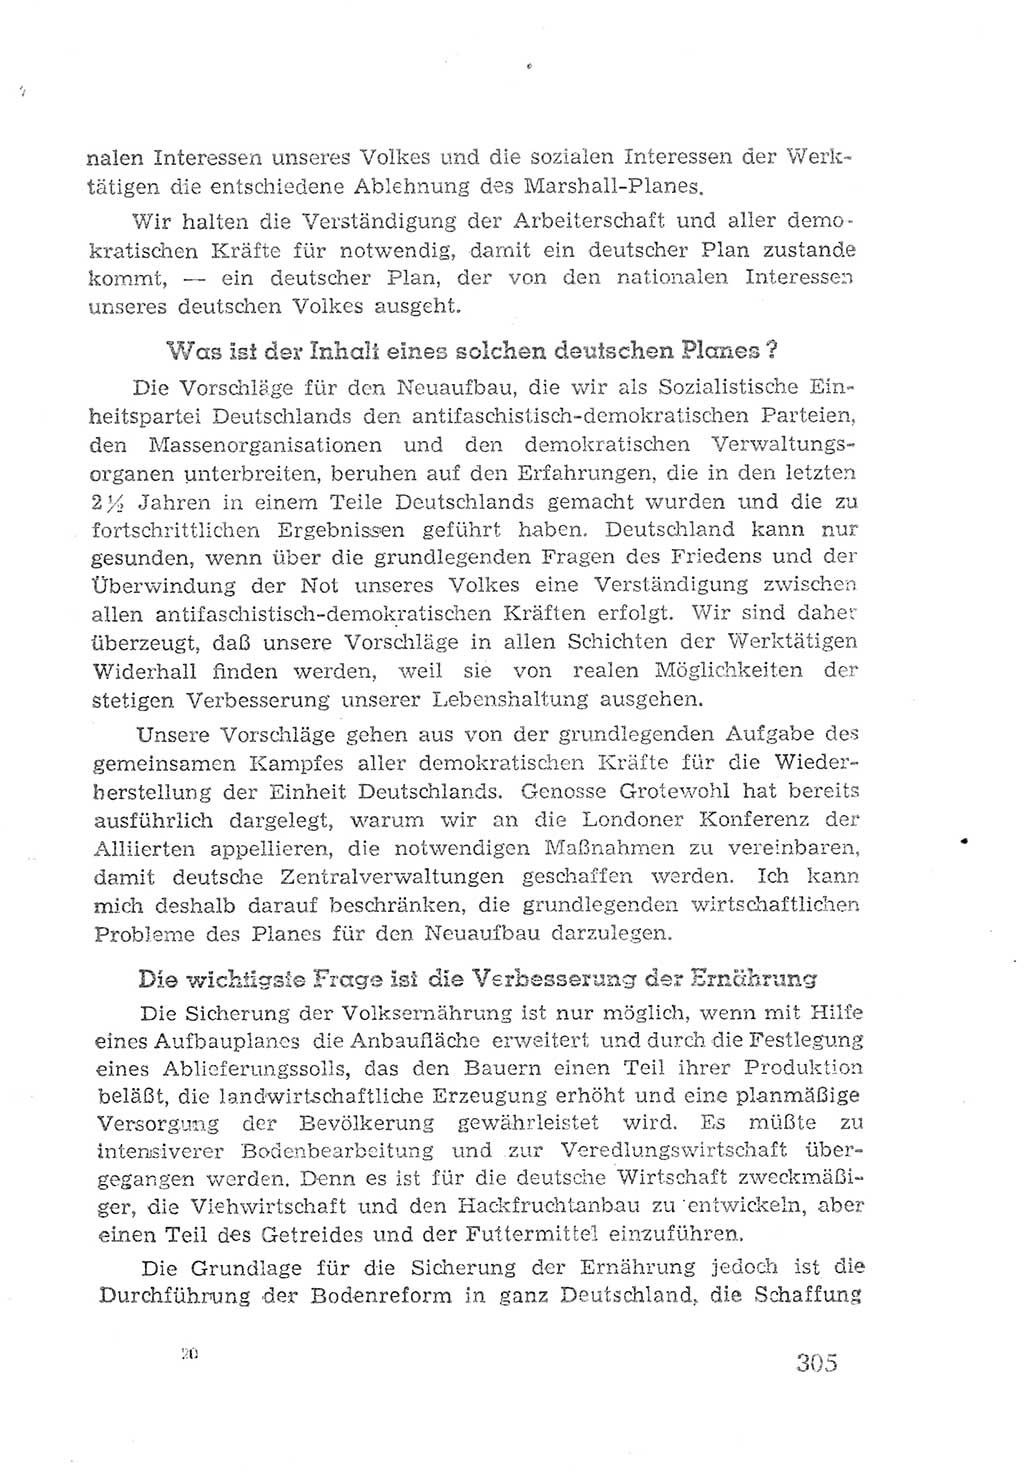 Protokoll der Verhandlungen des 2. Parteitages der Sozialistischen Einheitspartei Deutschlands (SED) [Sowjetische Besatzungszone (SBZ) Deutschlands] 1947, Seite 305 (Prot. Verh. 2. PT SED SBZ Dtl. 1947, S. 305)